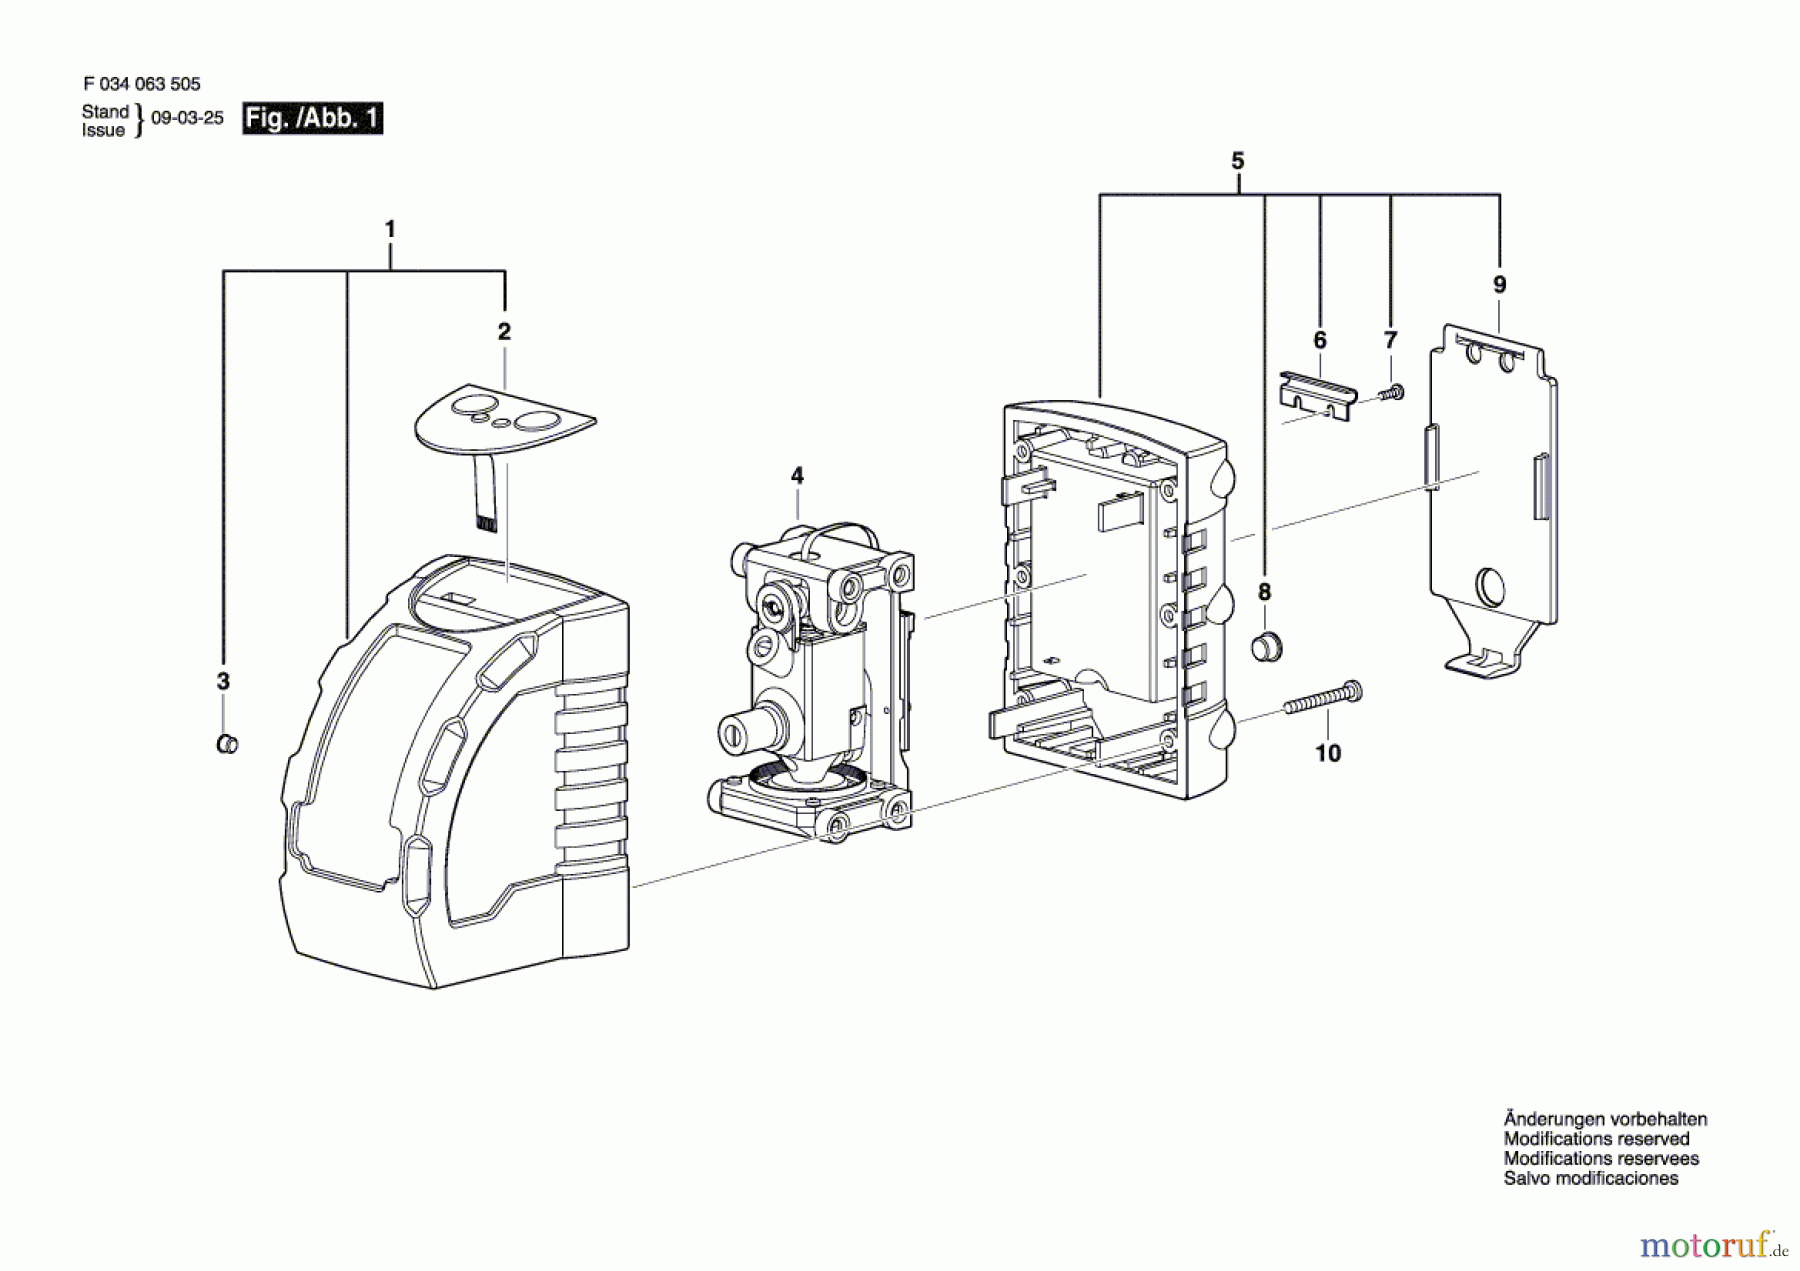  Bosch Werkzeug Linienlaser CLL06 - WR Seite 1